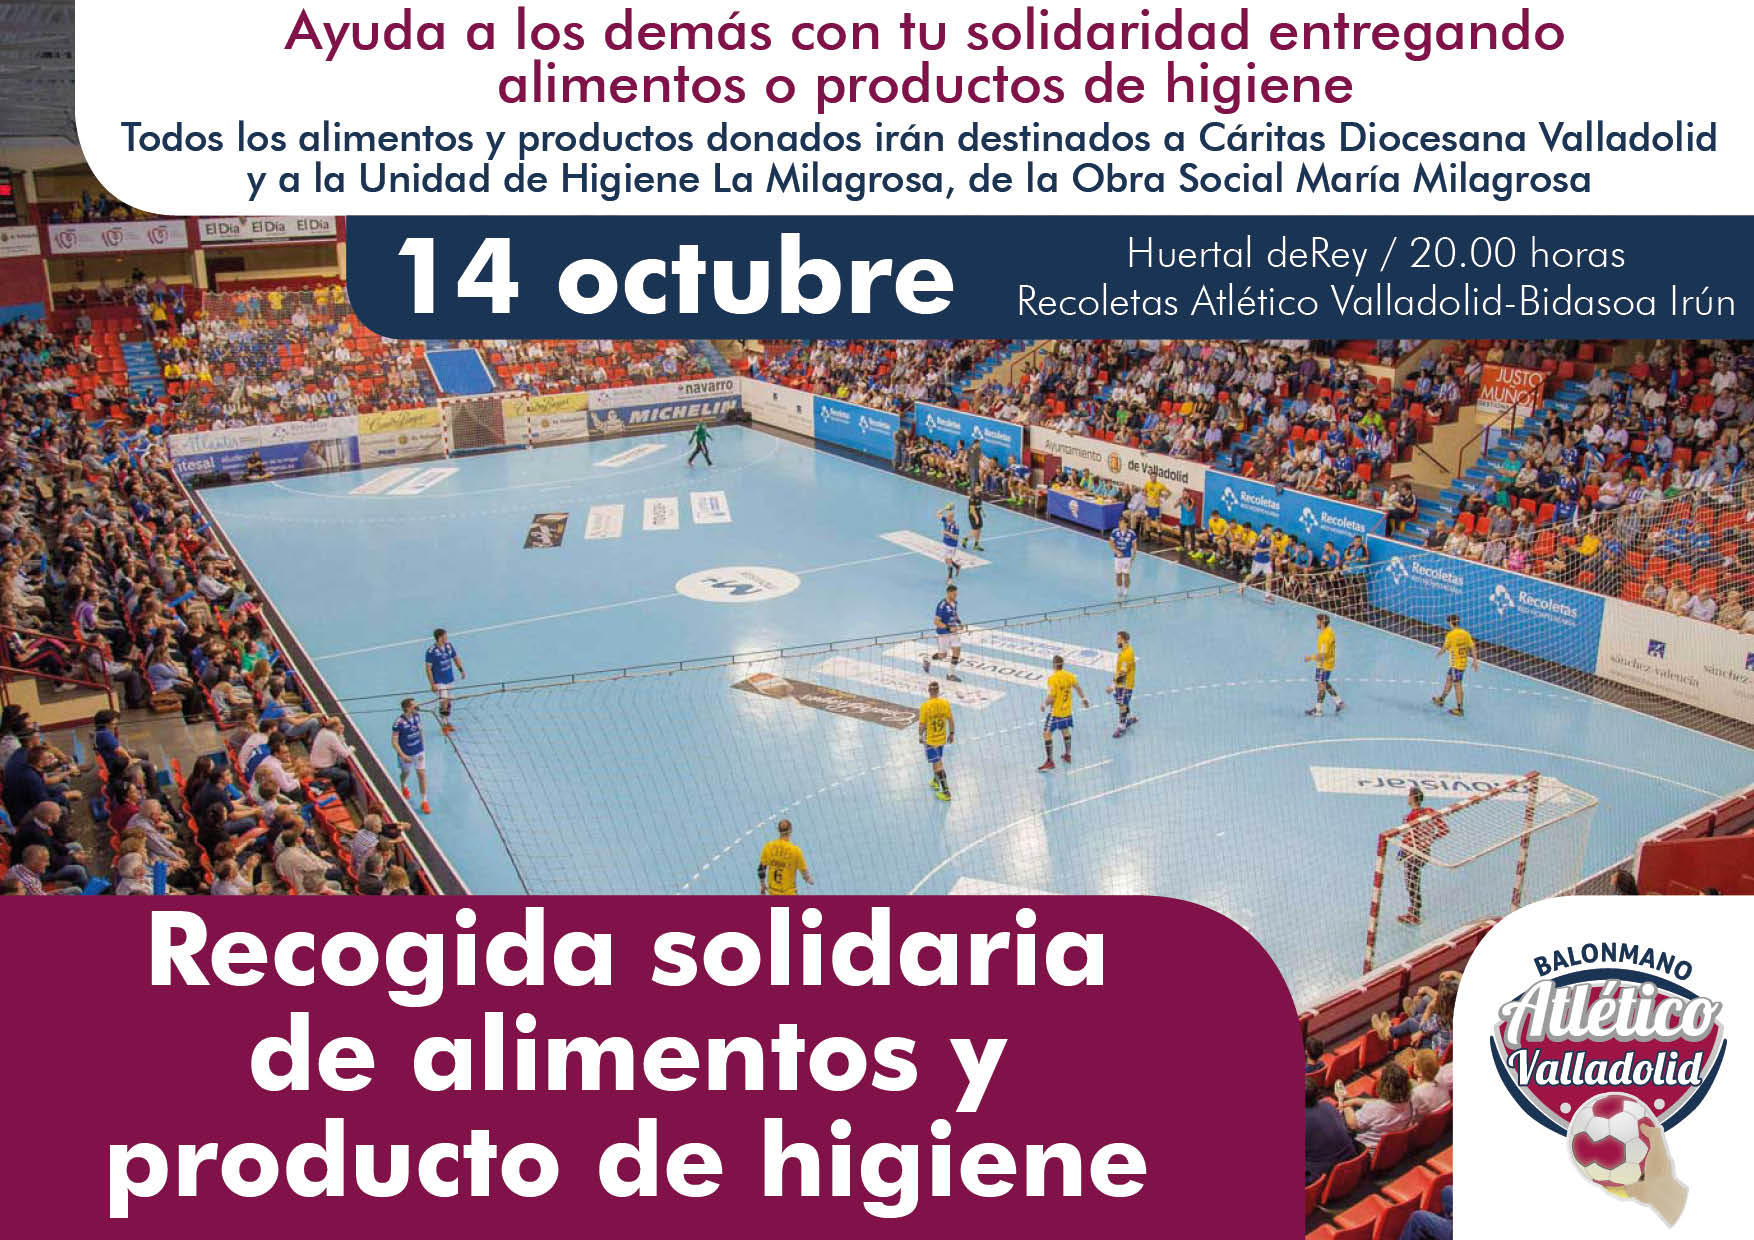 El Atlético Valladolid pide ayuda a sus aficionados para una recogida solidaria de alimentos y productos de higiene